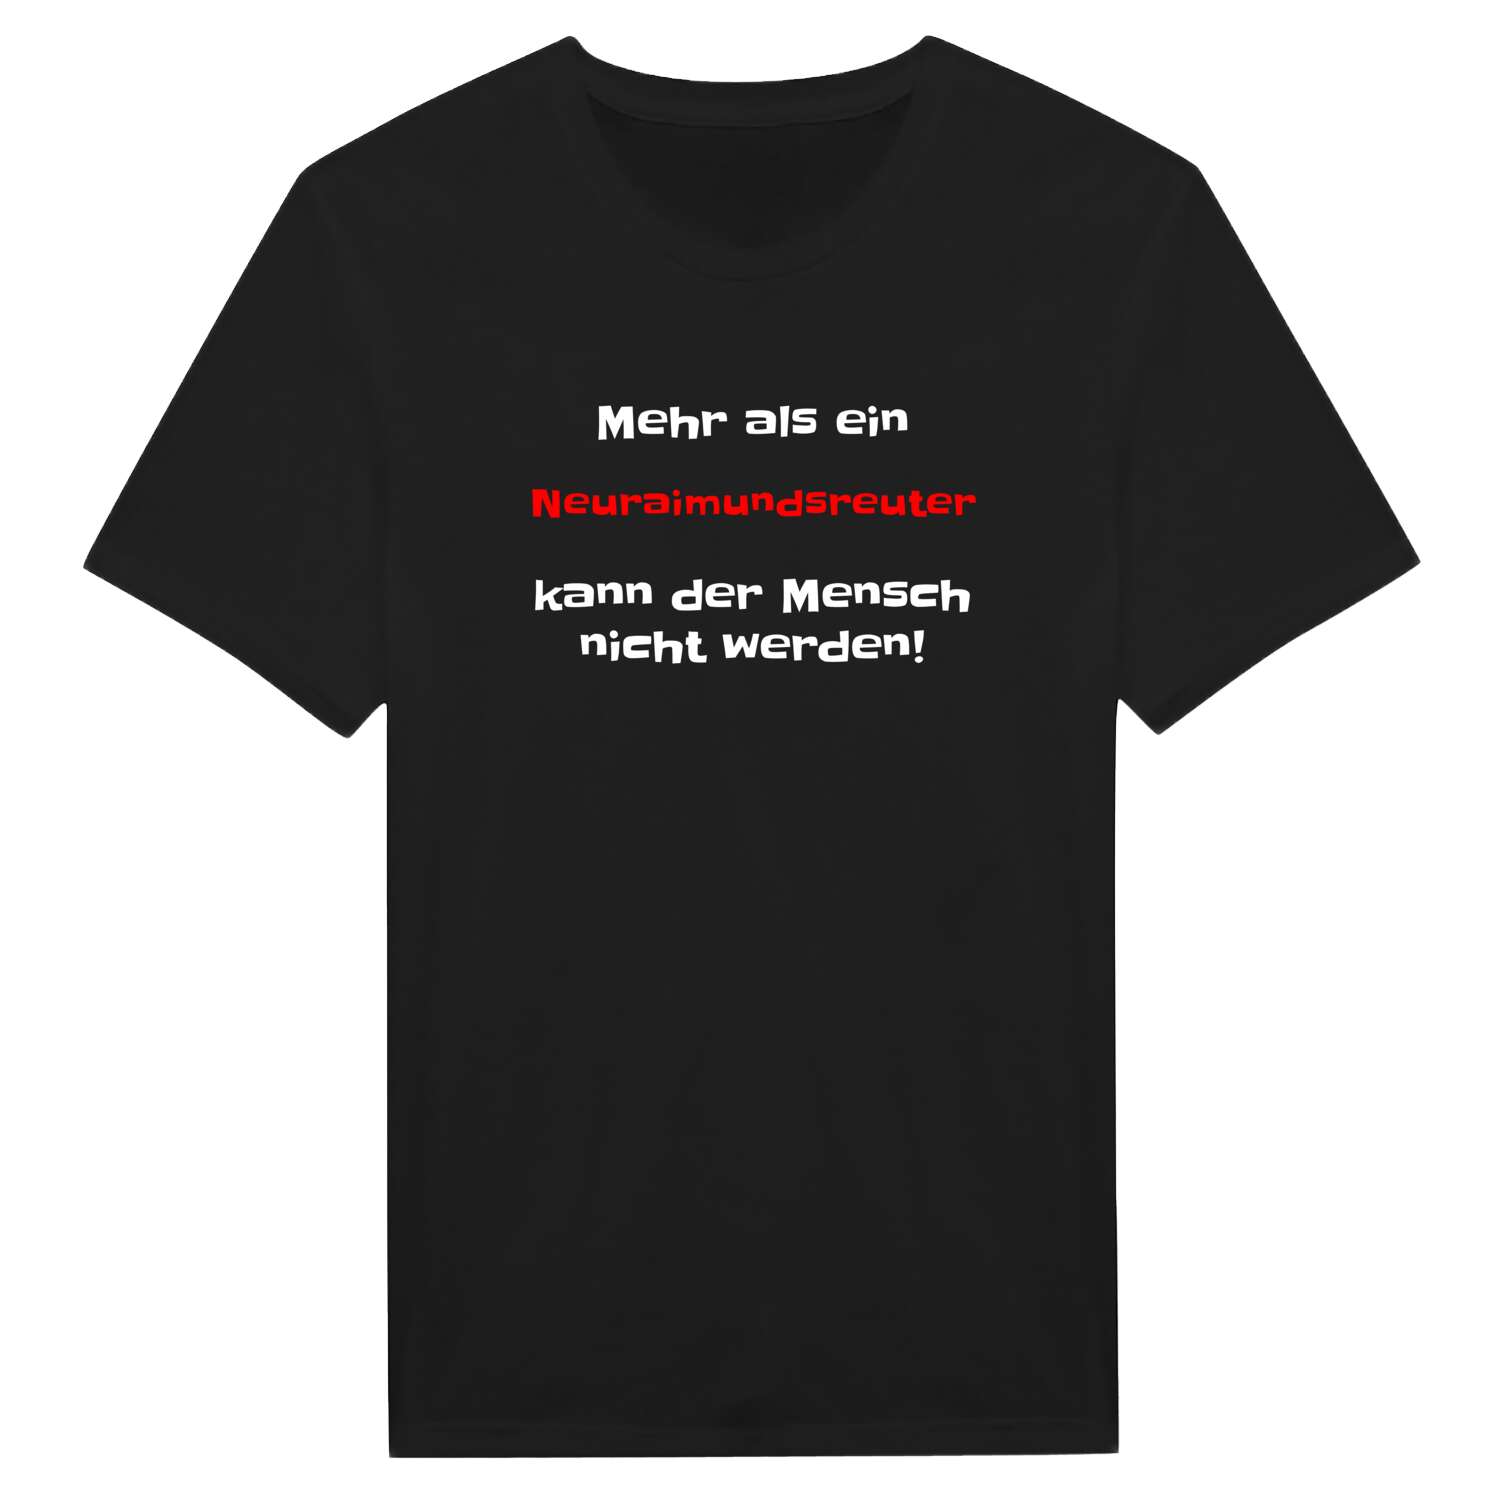 Neuraimundsreut T-Shirt »Mehr als ein«